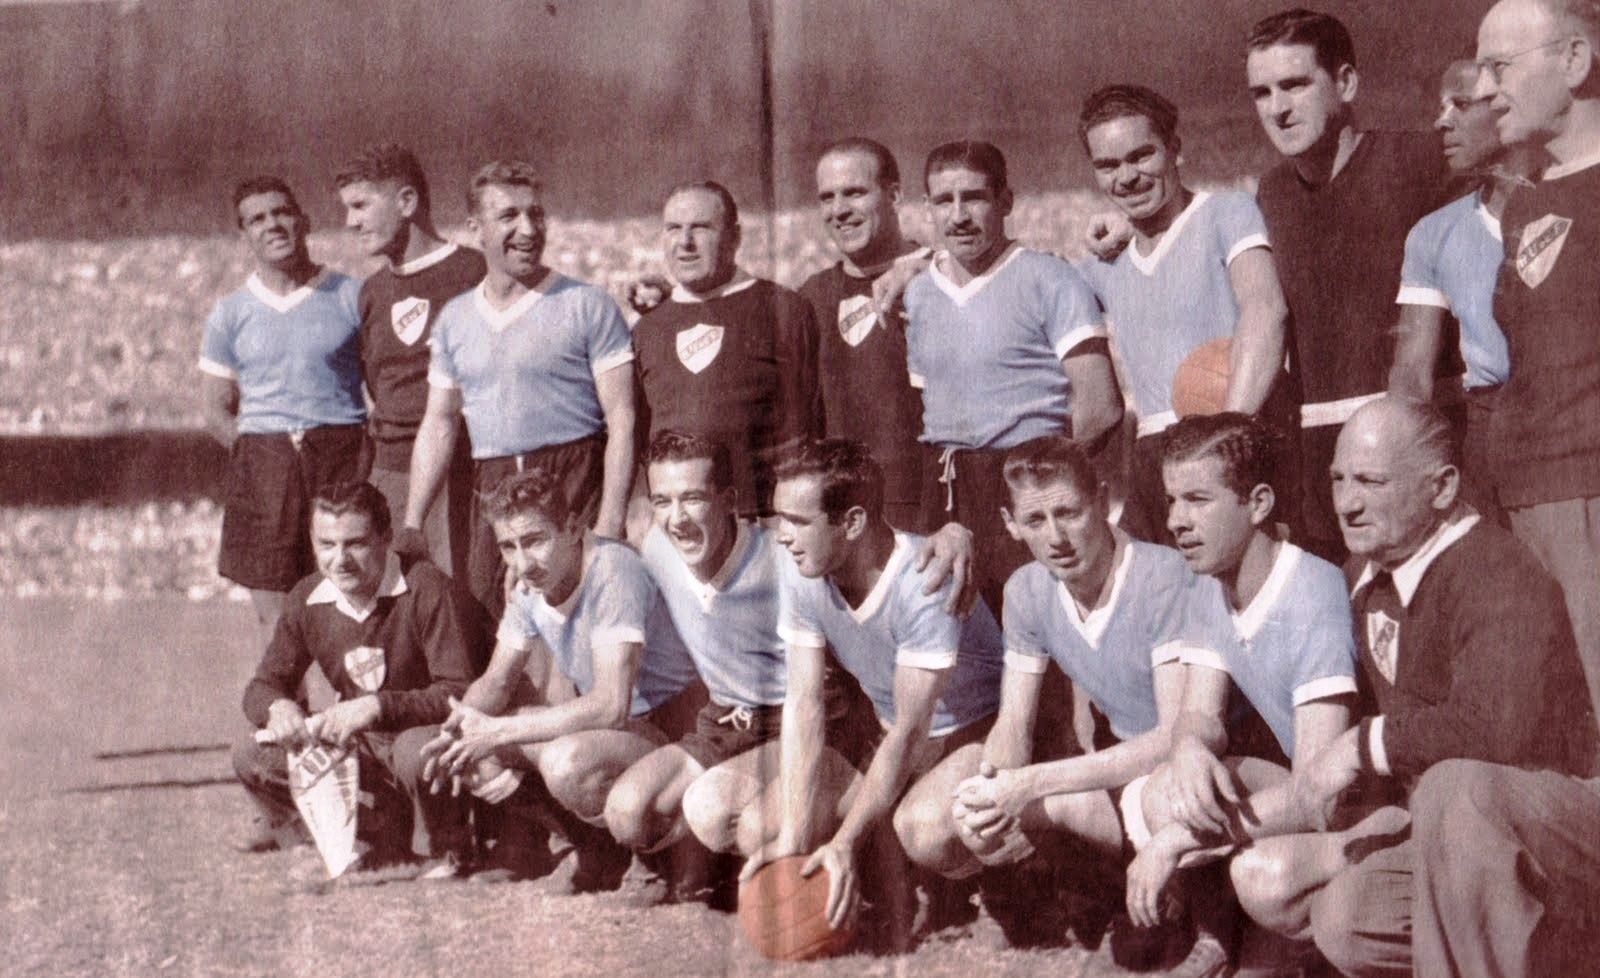  Сборная Уругвая - чемпион мира 1950 года